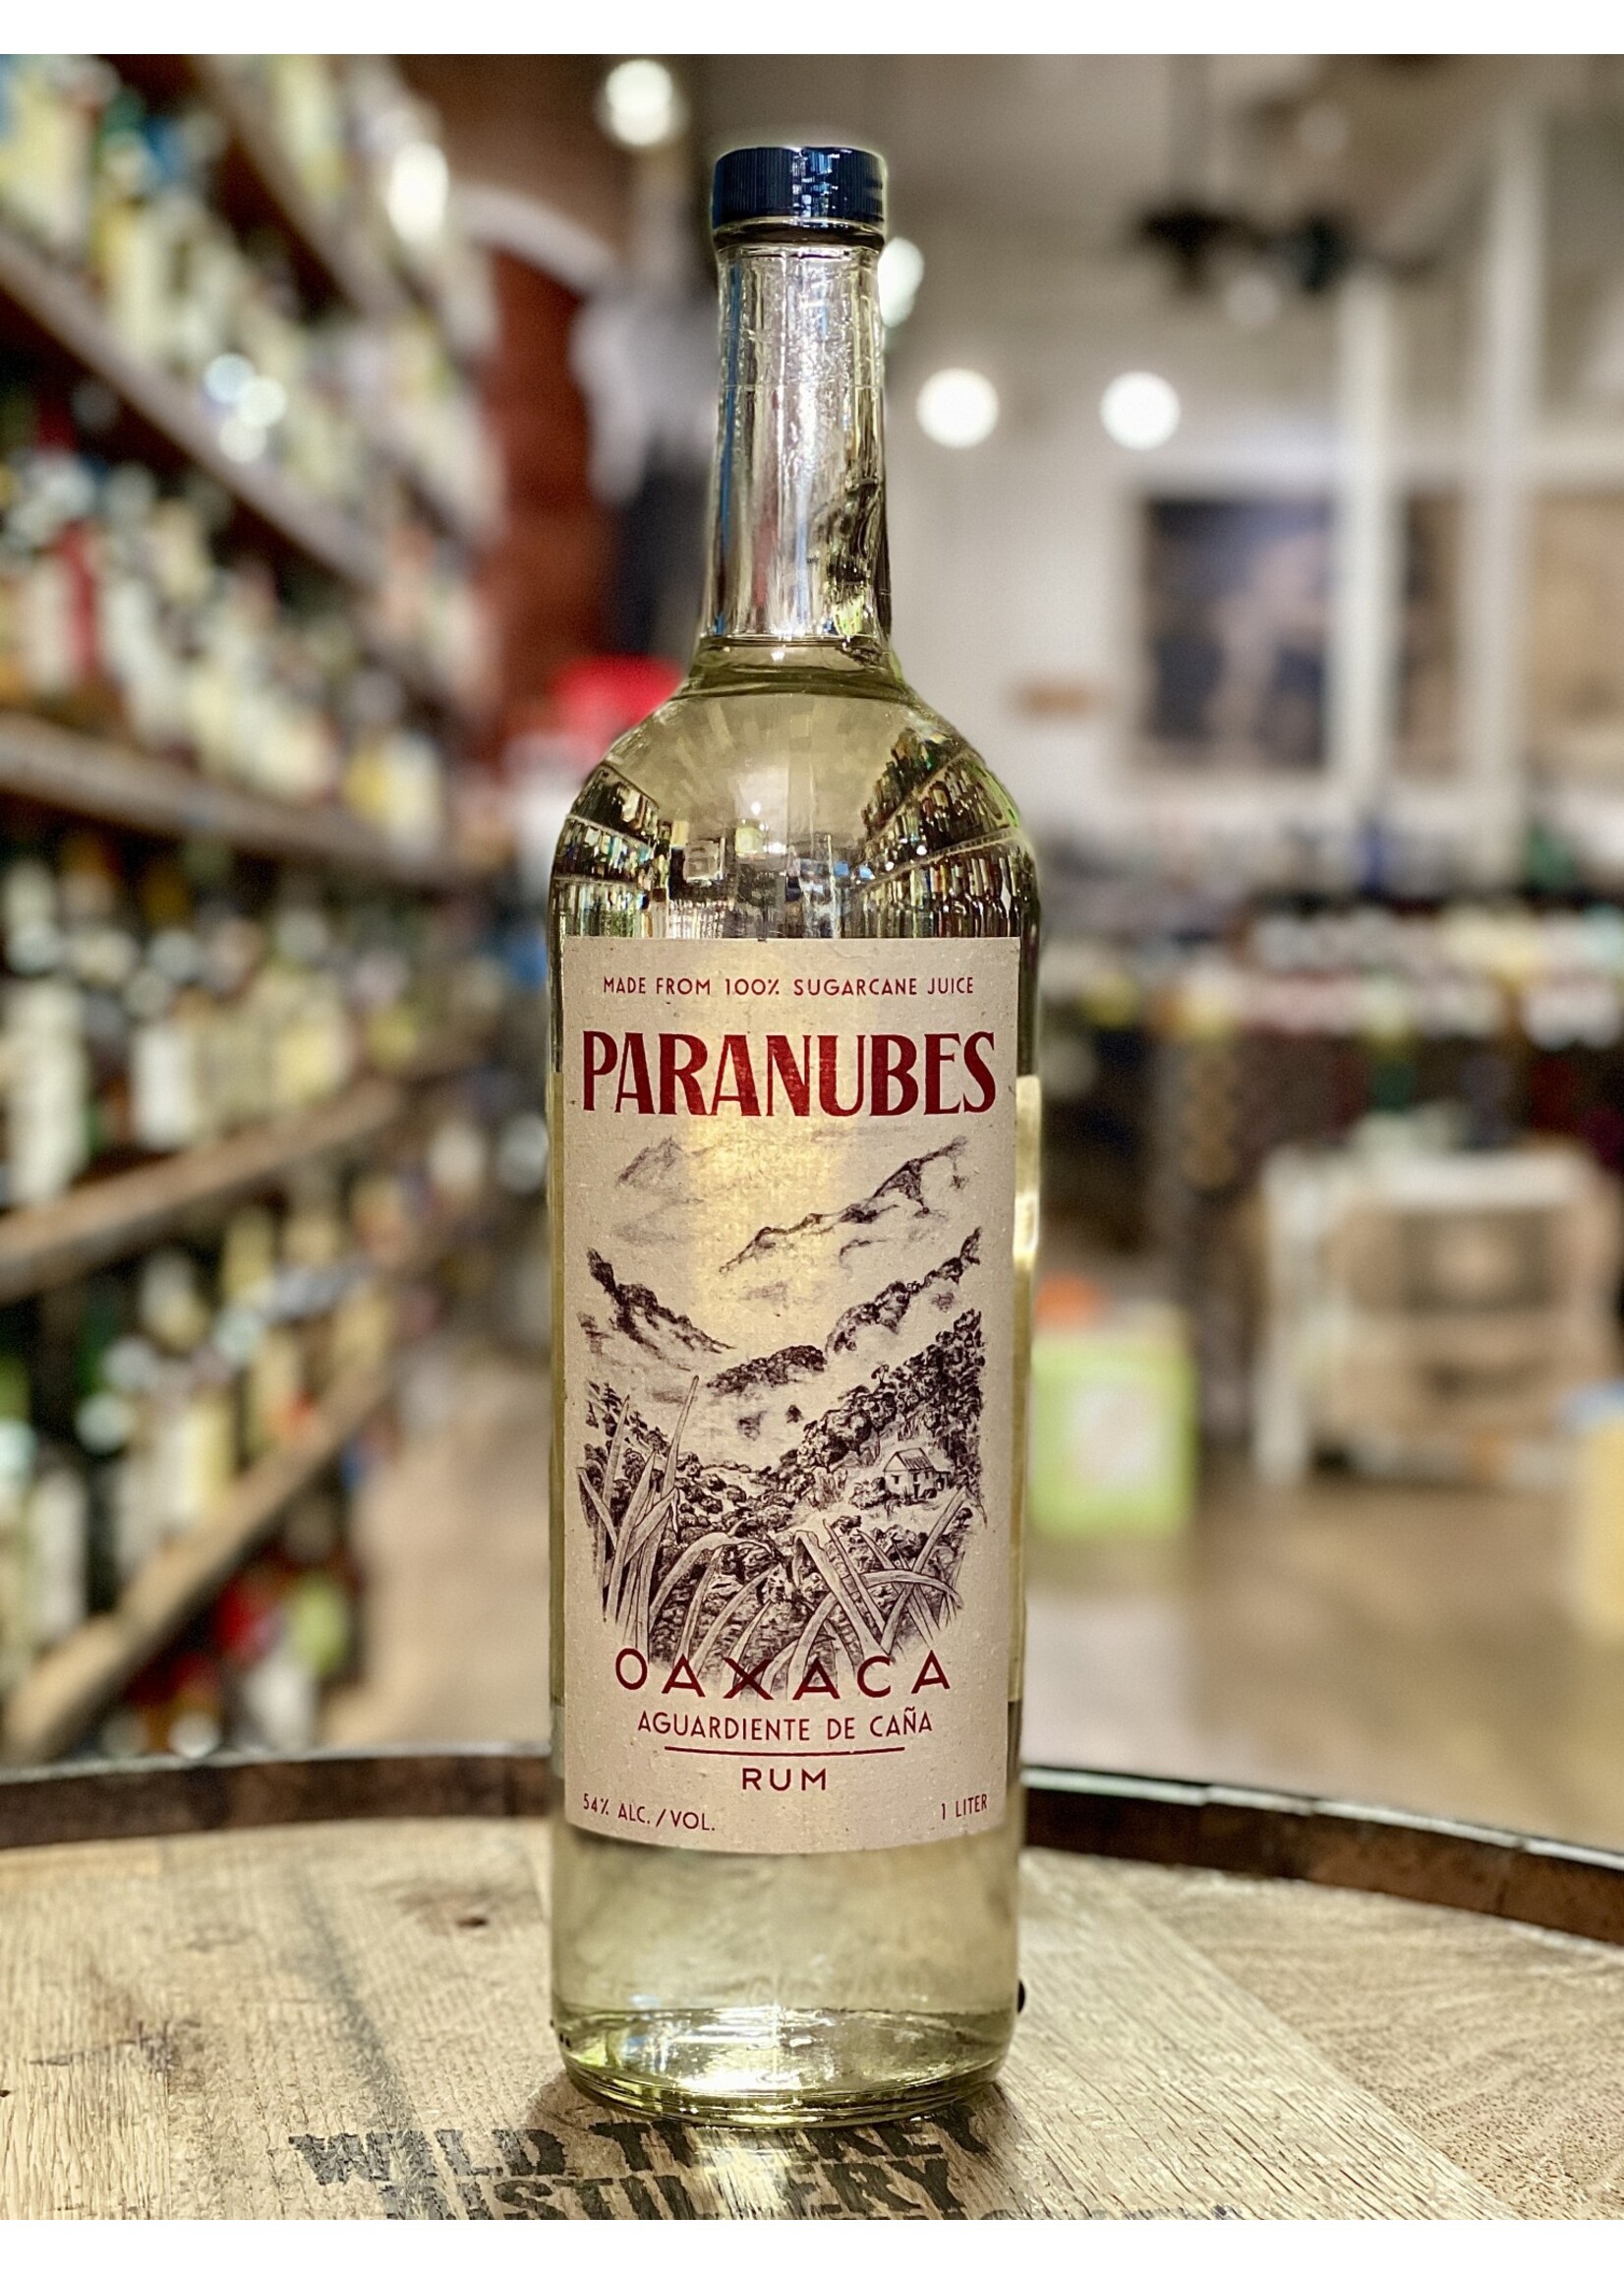 Paranubes / Oaxaca Aguardiente de Cana Rum / 1.0L